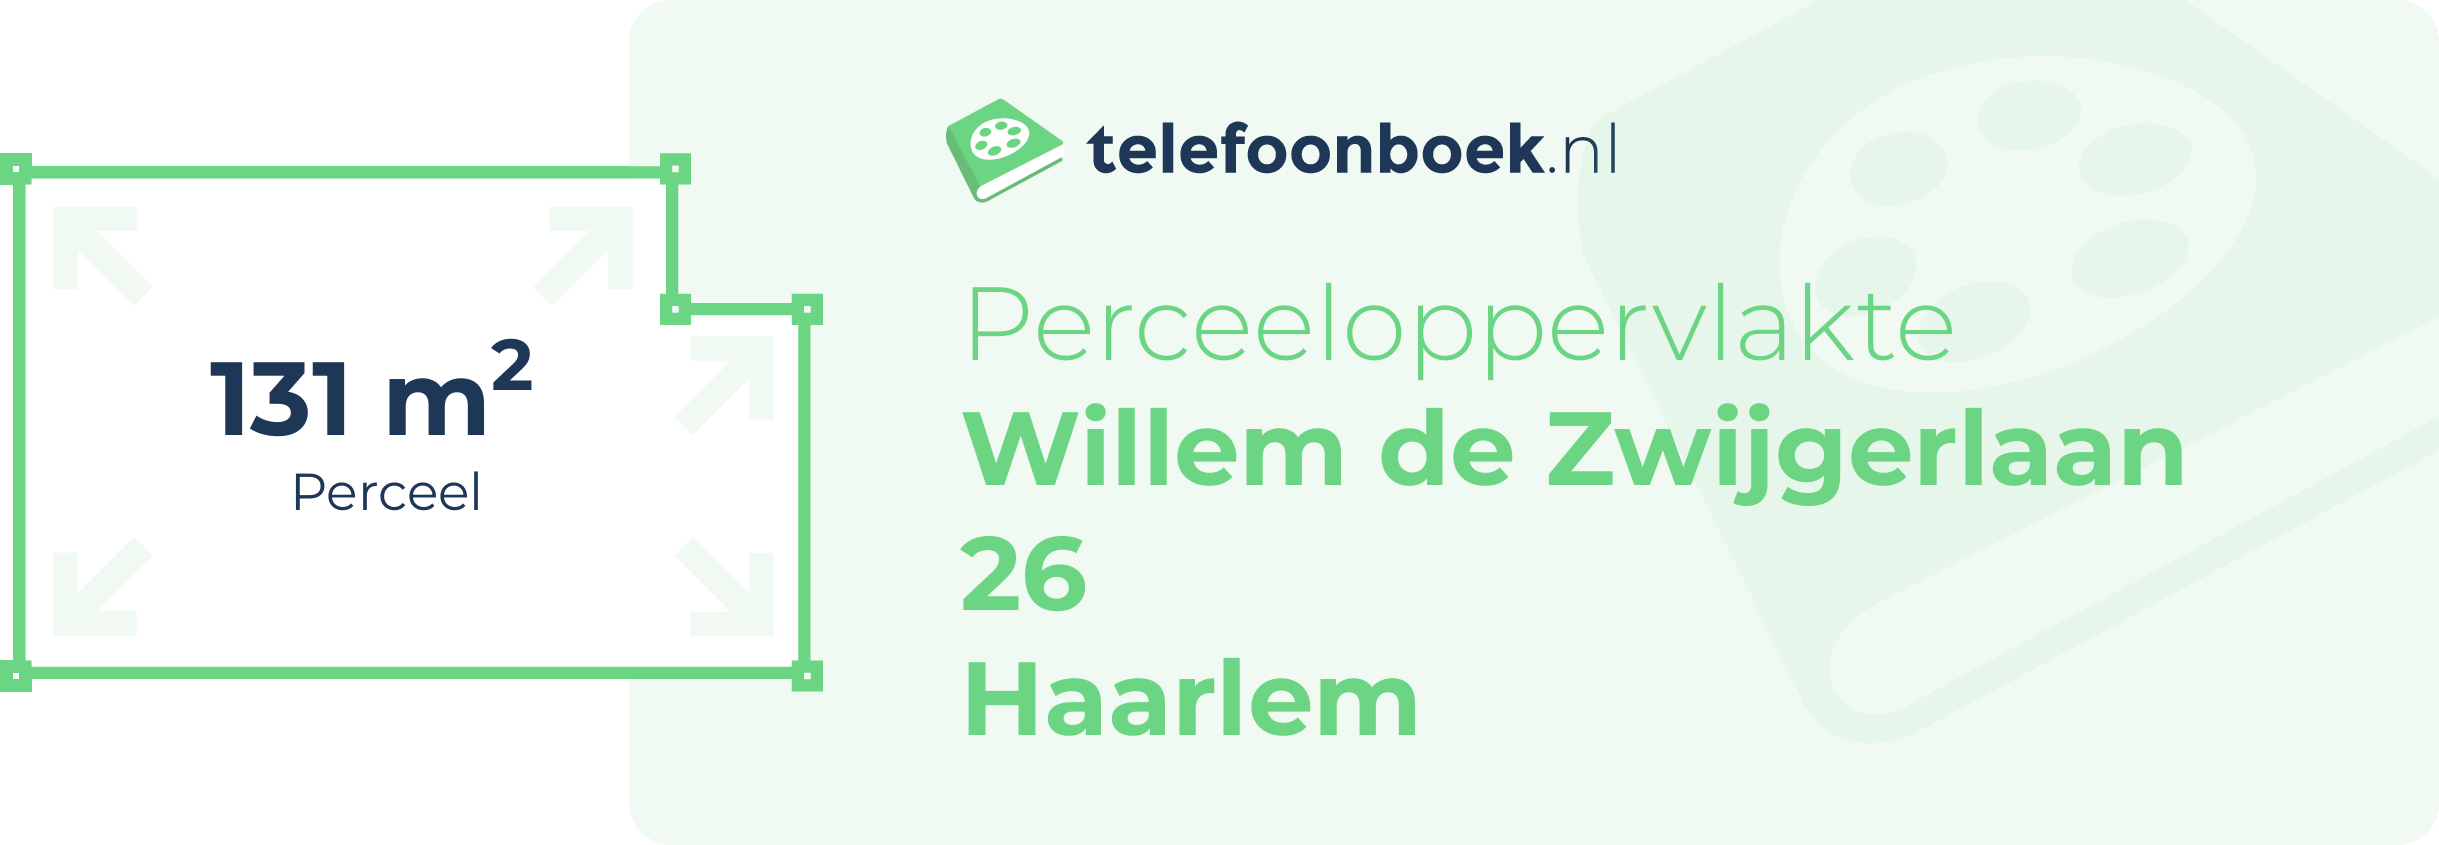 Perceeloppervlakte Willem De Zwijgerlaan 26 Haarlem